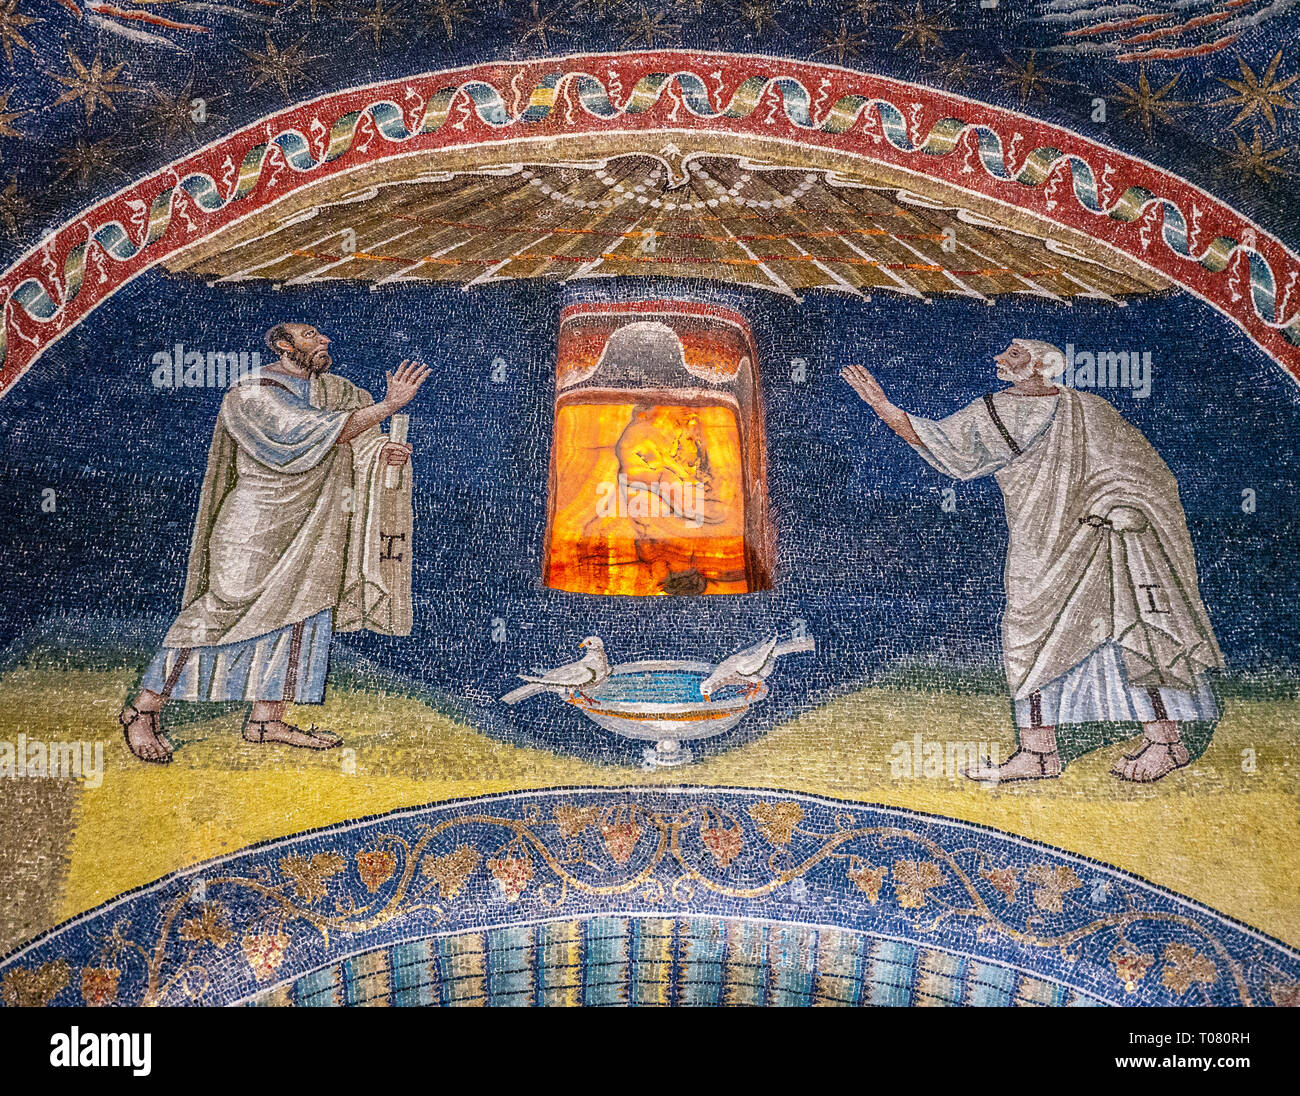 Italy, Emilia Romagna, Ravenna, the mosaics of Mausoleo di Galla Placidia, mausoleum Stock Photo